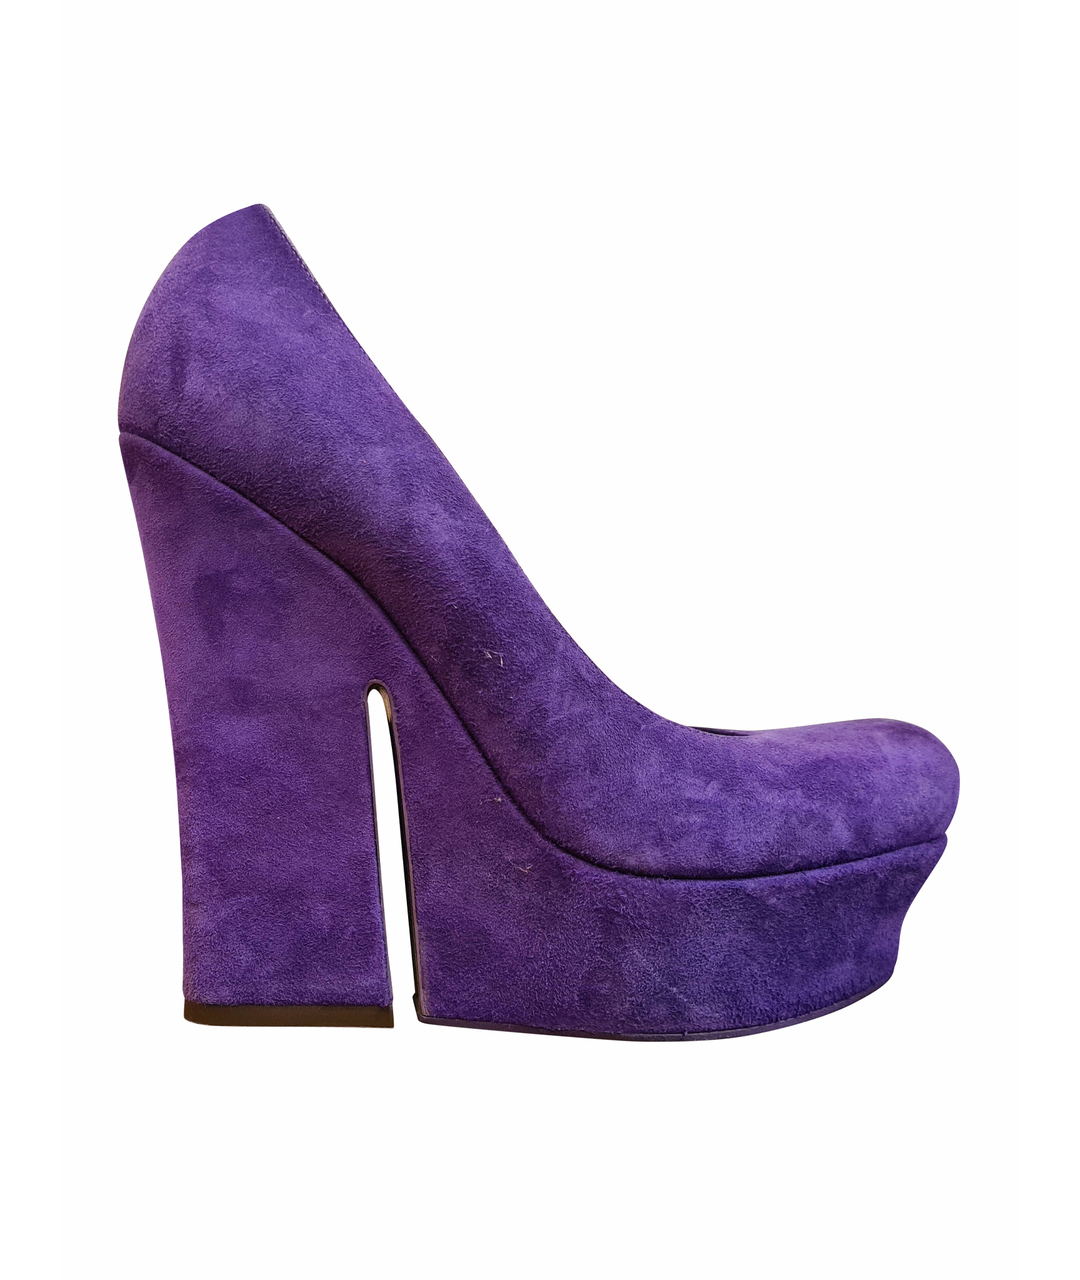 YVES SAINT LAURENT VINTAGE Фиолетовые замшевые туфли, фото 1